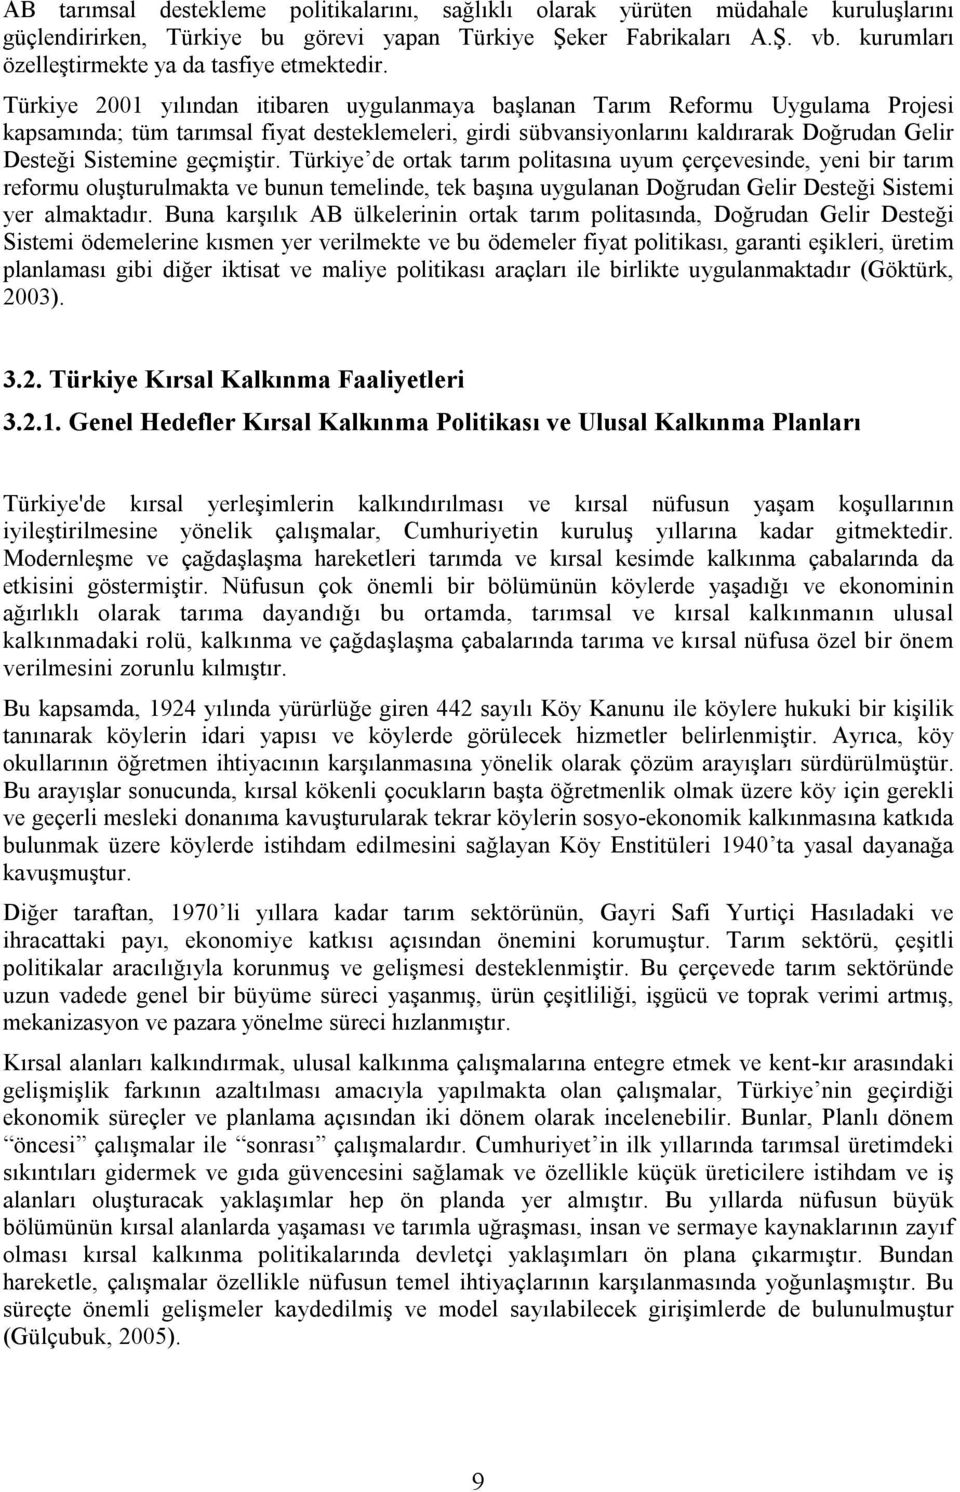 Türkiye 2001 yılından itibaren uygulanmaya başlanan Tarım Reformu Uygulama Projesi kapsamında; tüm tarımsal fiyat desteklemeleri, girdi sübvansiyonlarını kaldırarak Doğrudan Gelir Desteği Sistemine